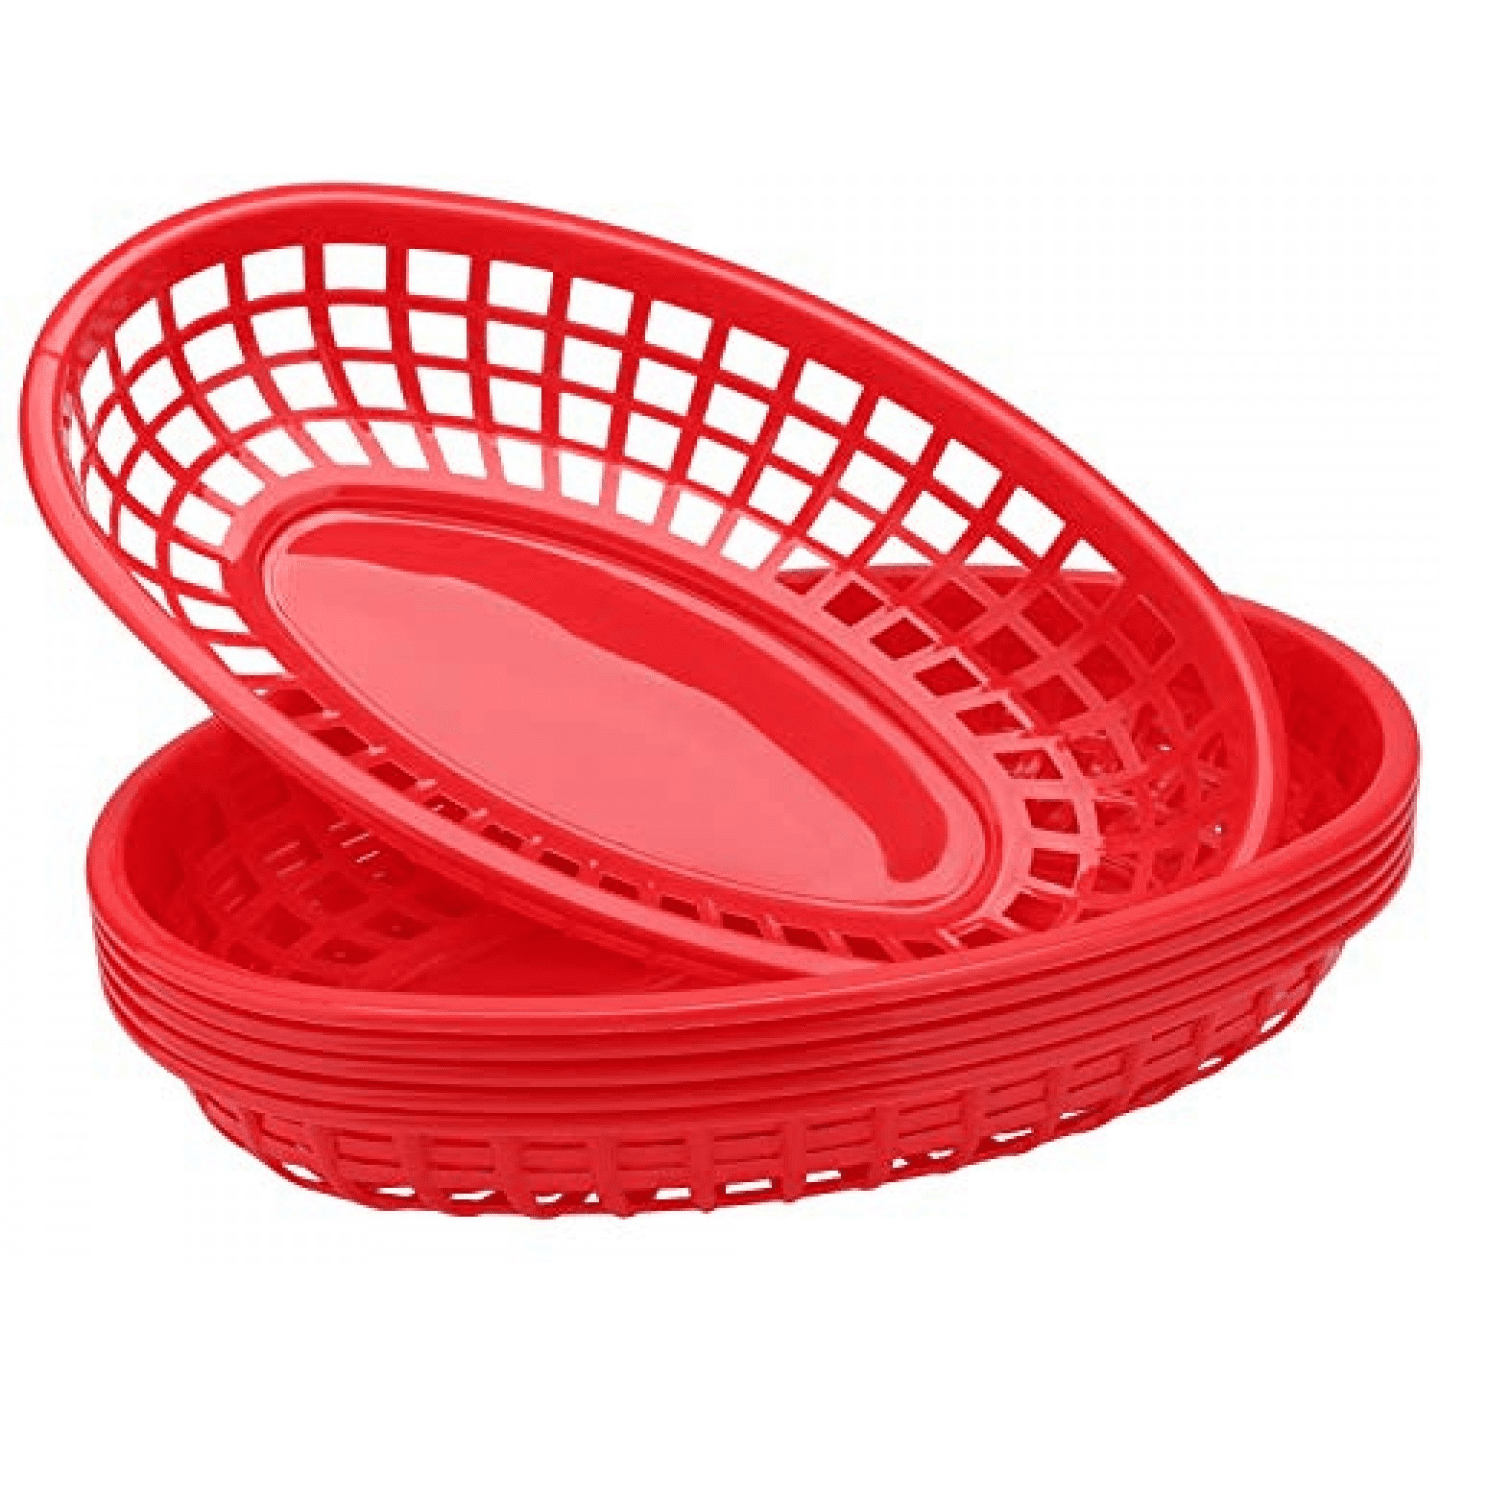 Plastic Mesh Basket, Red - 6 1/2L x 10 1/4W x 2 1/2H